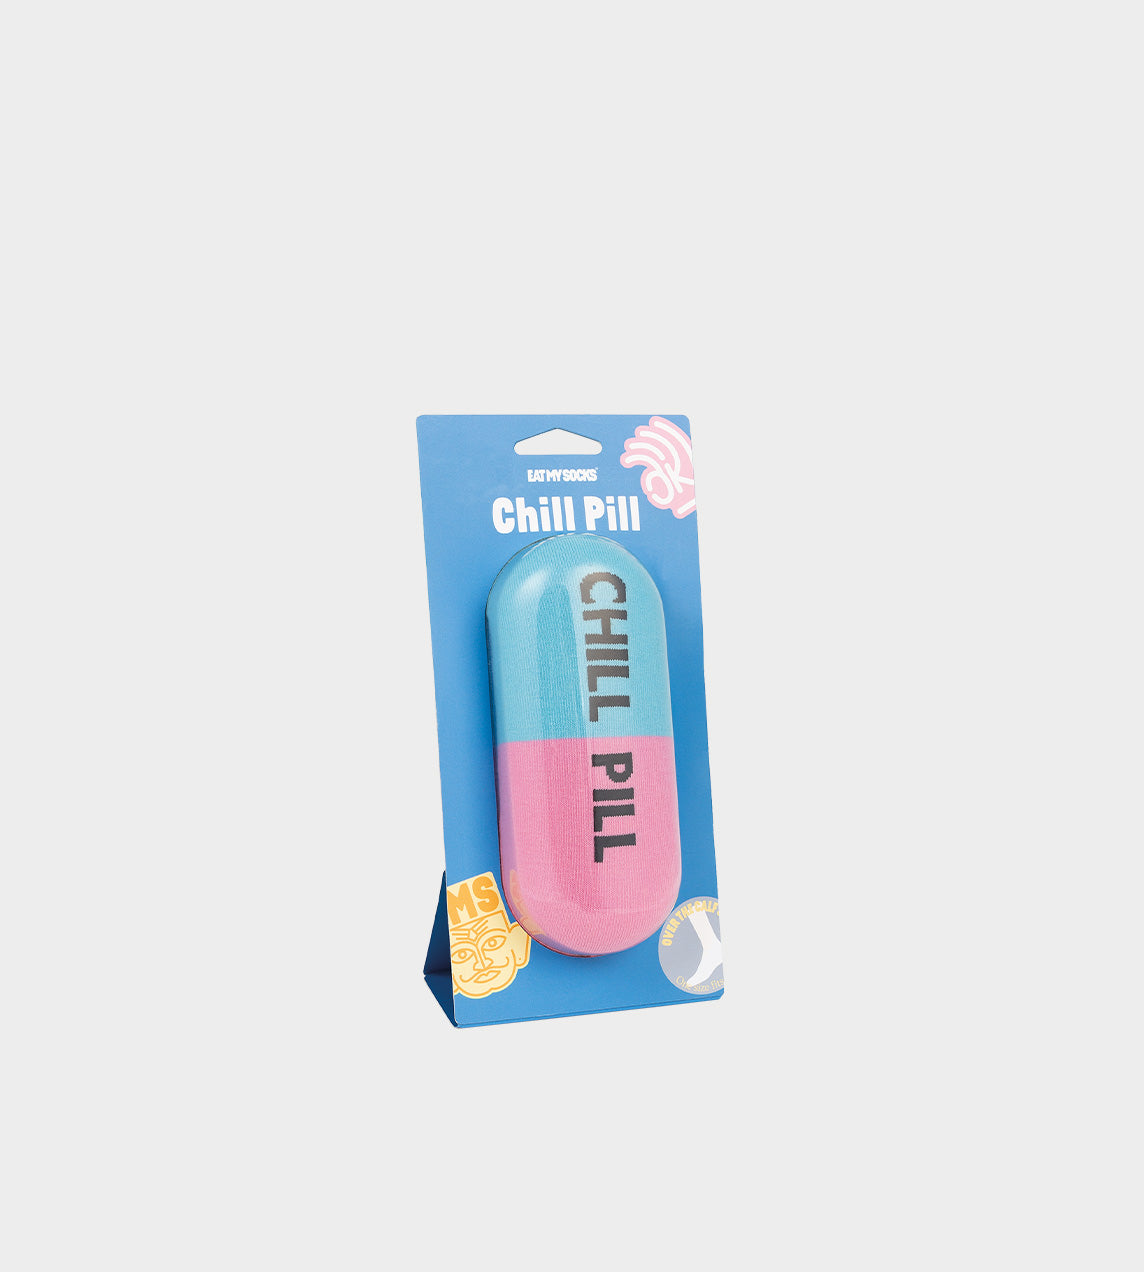 EAT MY SOCKS - Chill Pill Socks - 1 Pair